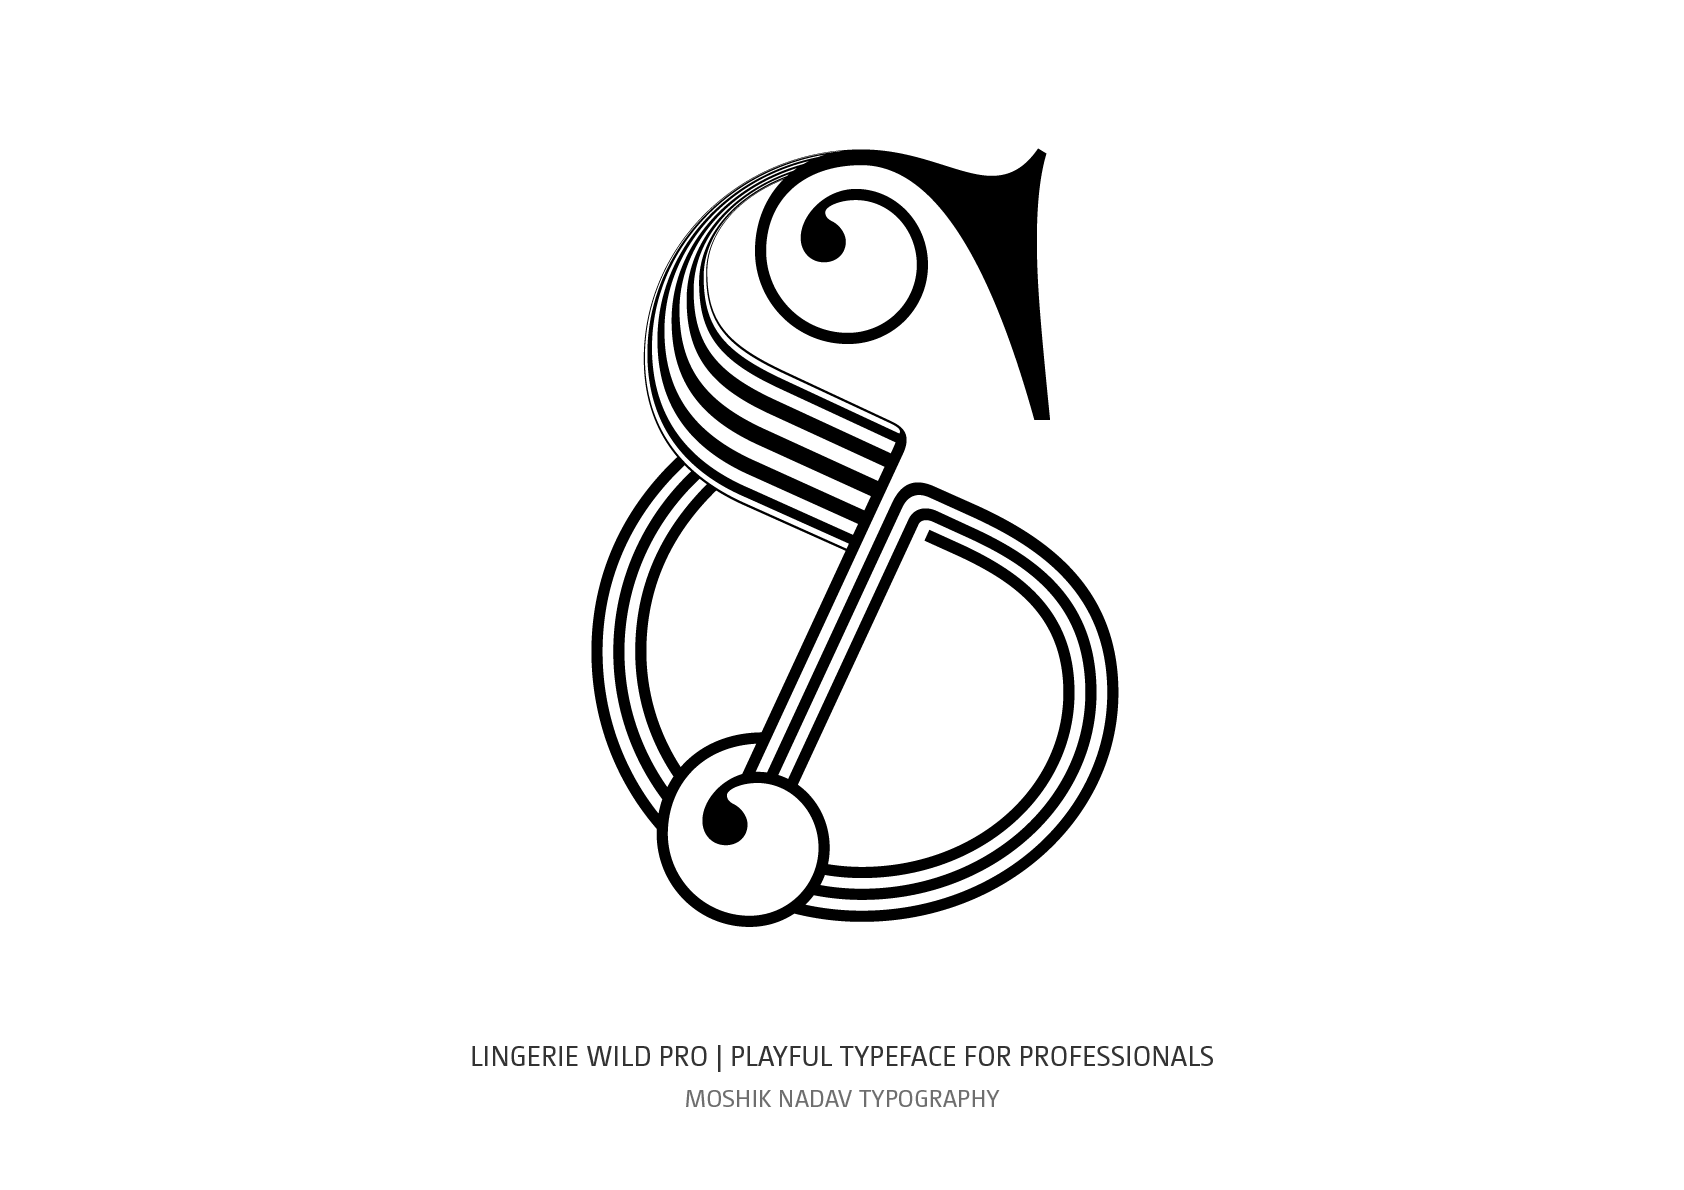 cool ampersand logo by Moshik Nadav Typography